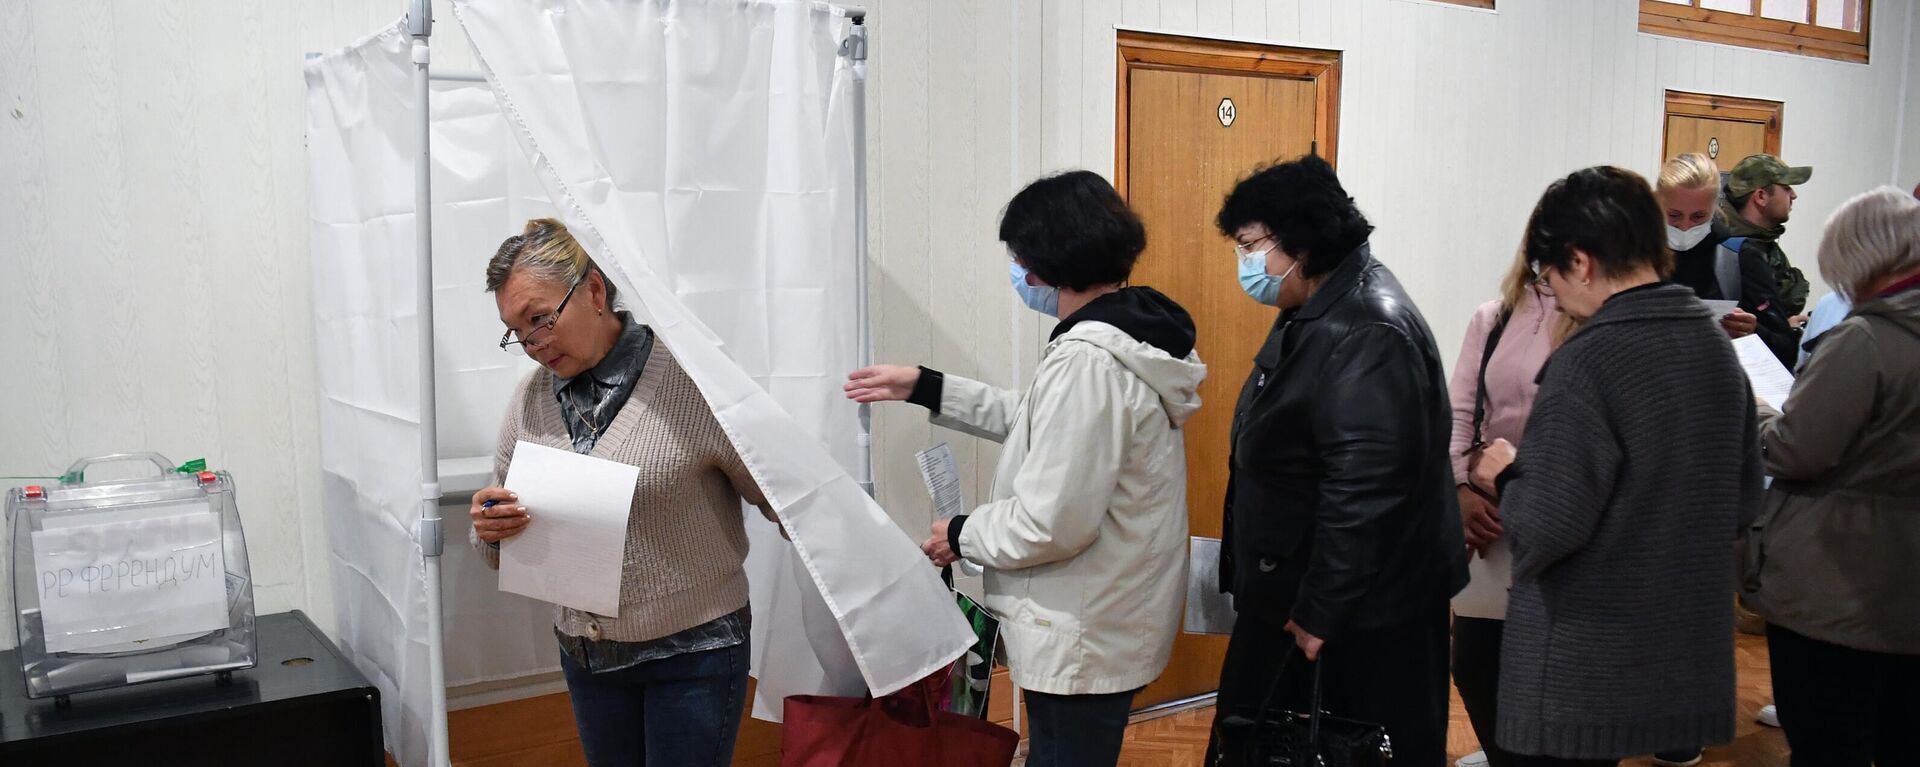 يصوت الناس في استفتاء على انضمام مقاطعة زابوروجيه إلى روسيا في مركز اقتراع في مؤسسة ميليتوبول، 23 سبتمبر 2022 - سبوتنيك عربي, 1920, 25.09.2022